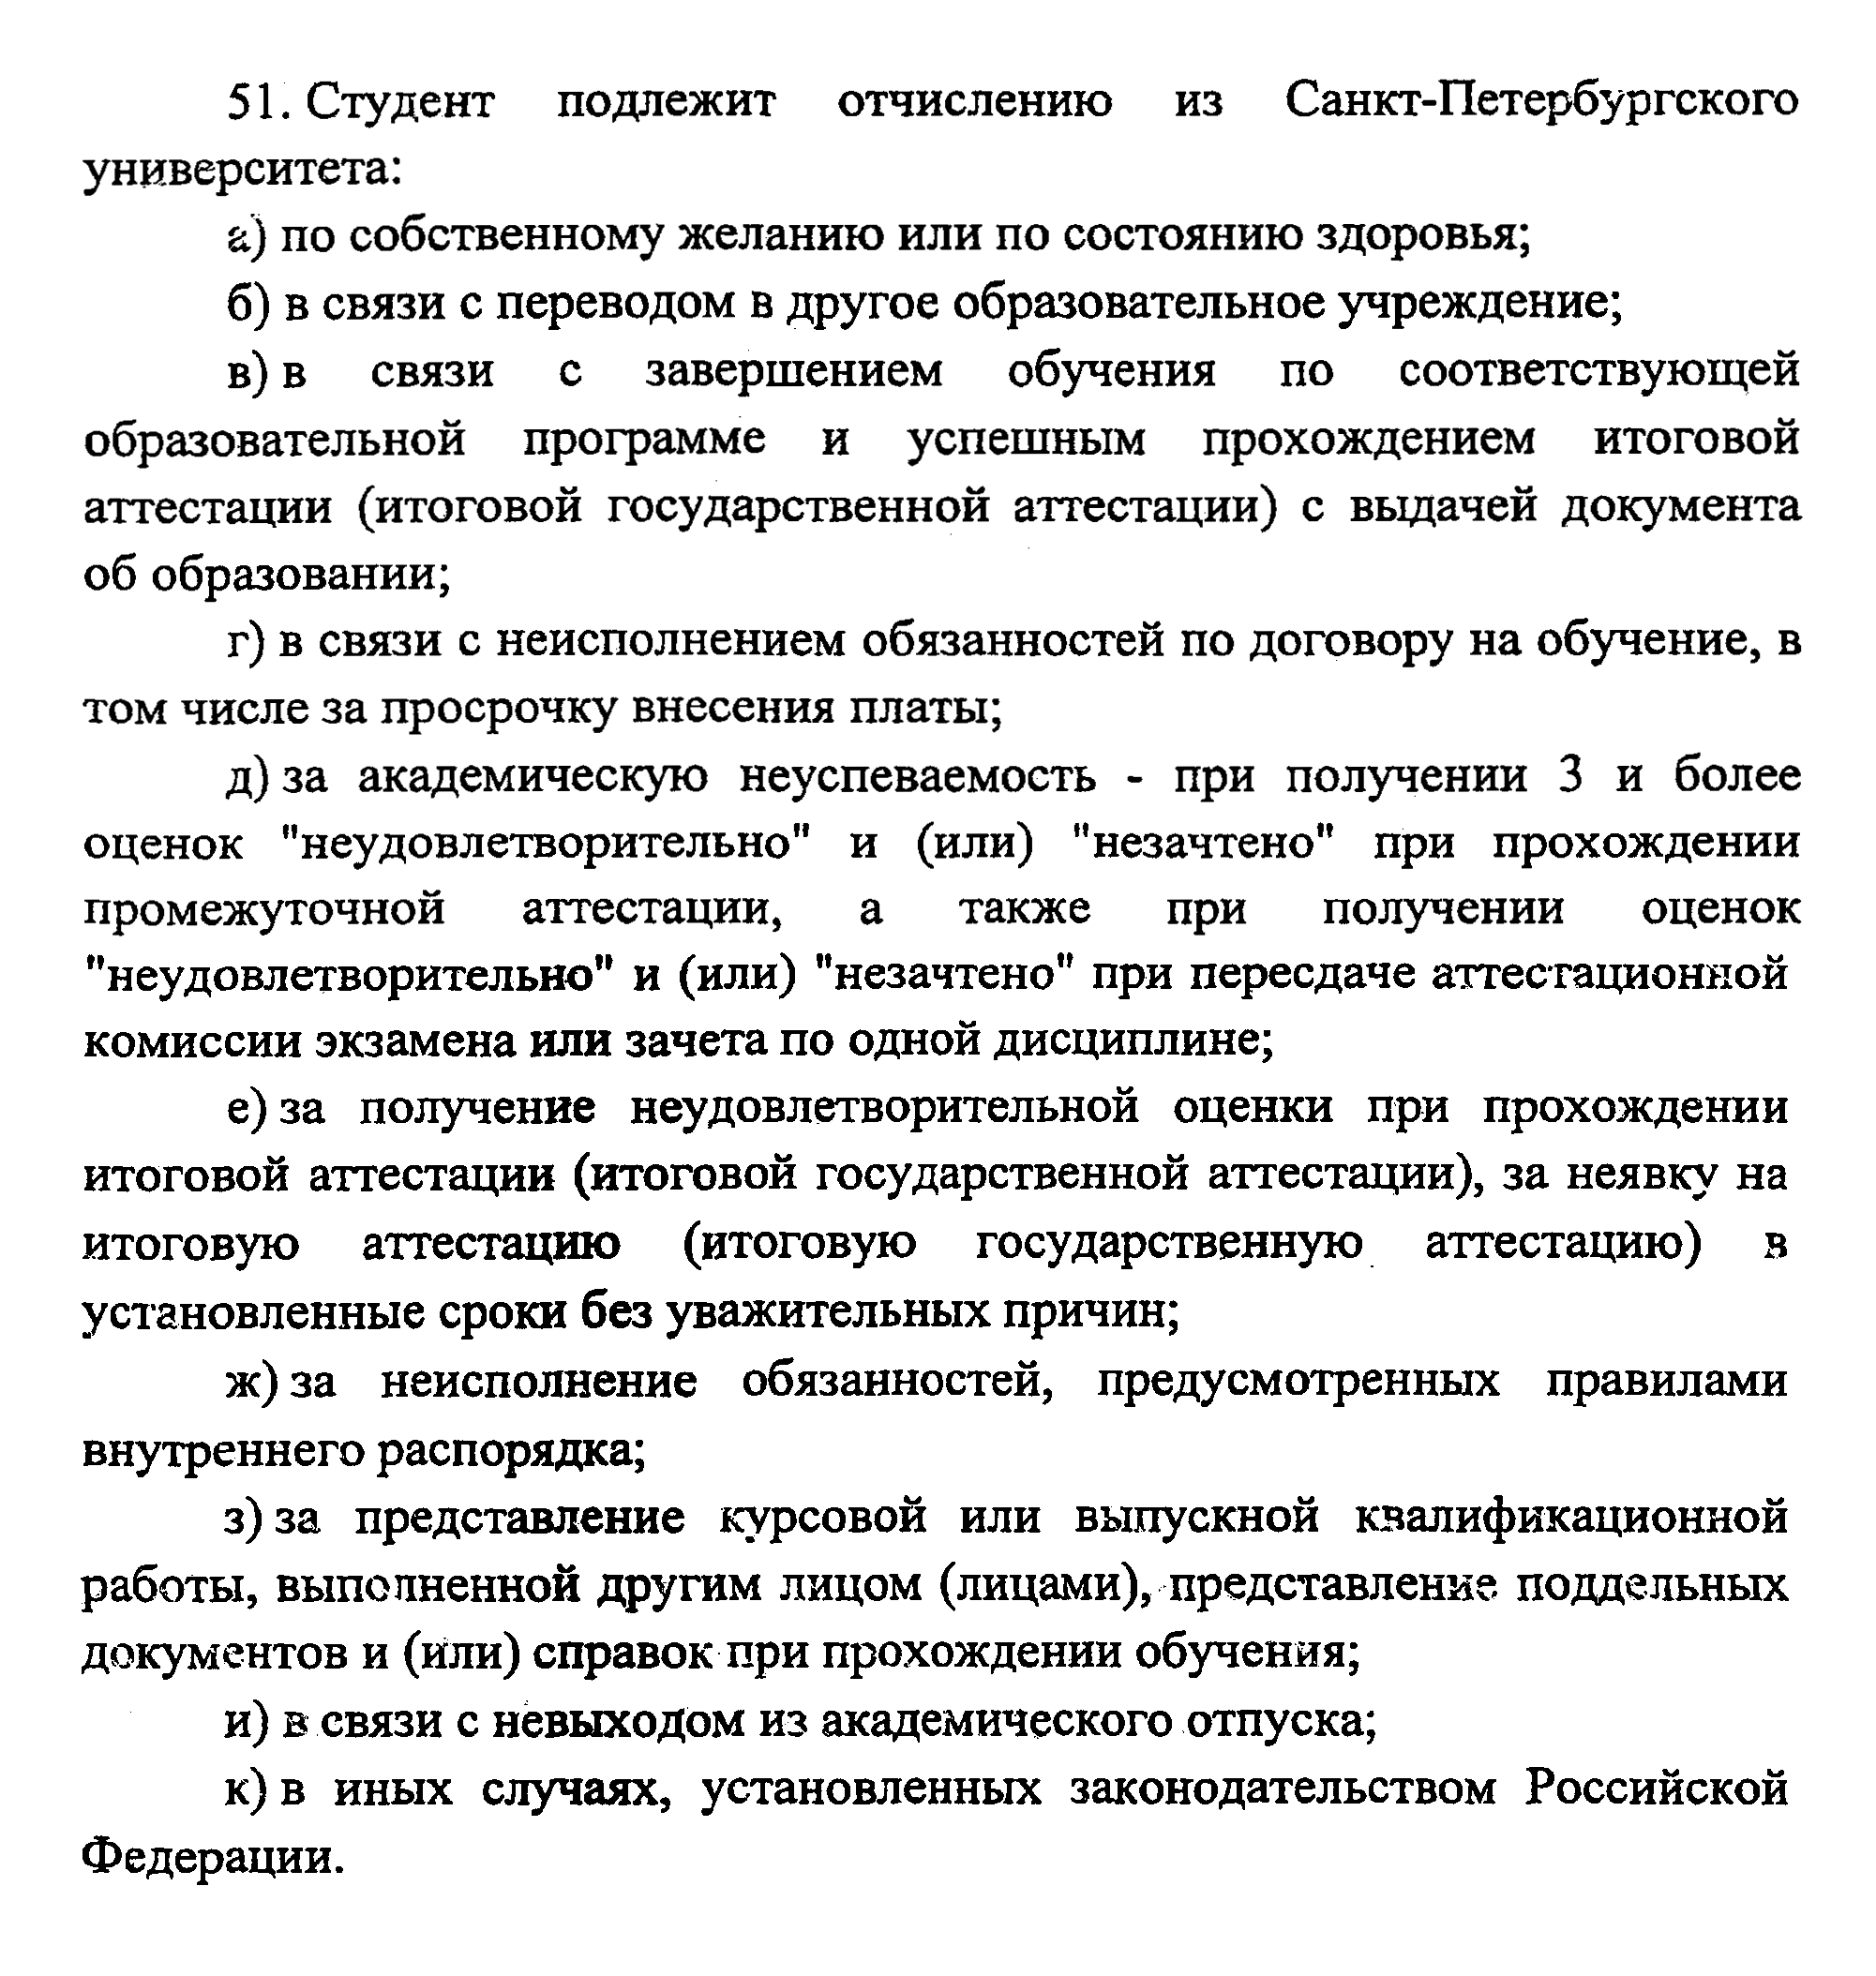 Основания для отчисления студента из СПбГУ прописаны в пункте 51 устава вуза. Источник: spbu.ru